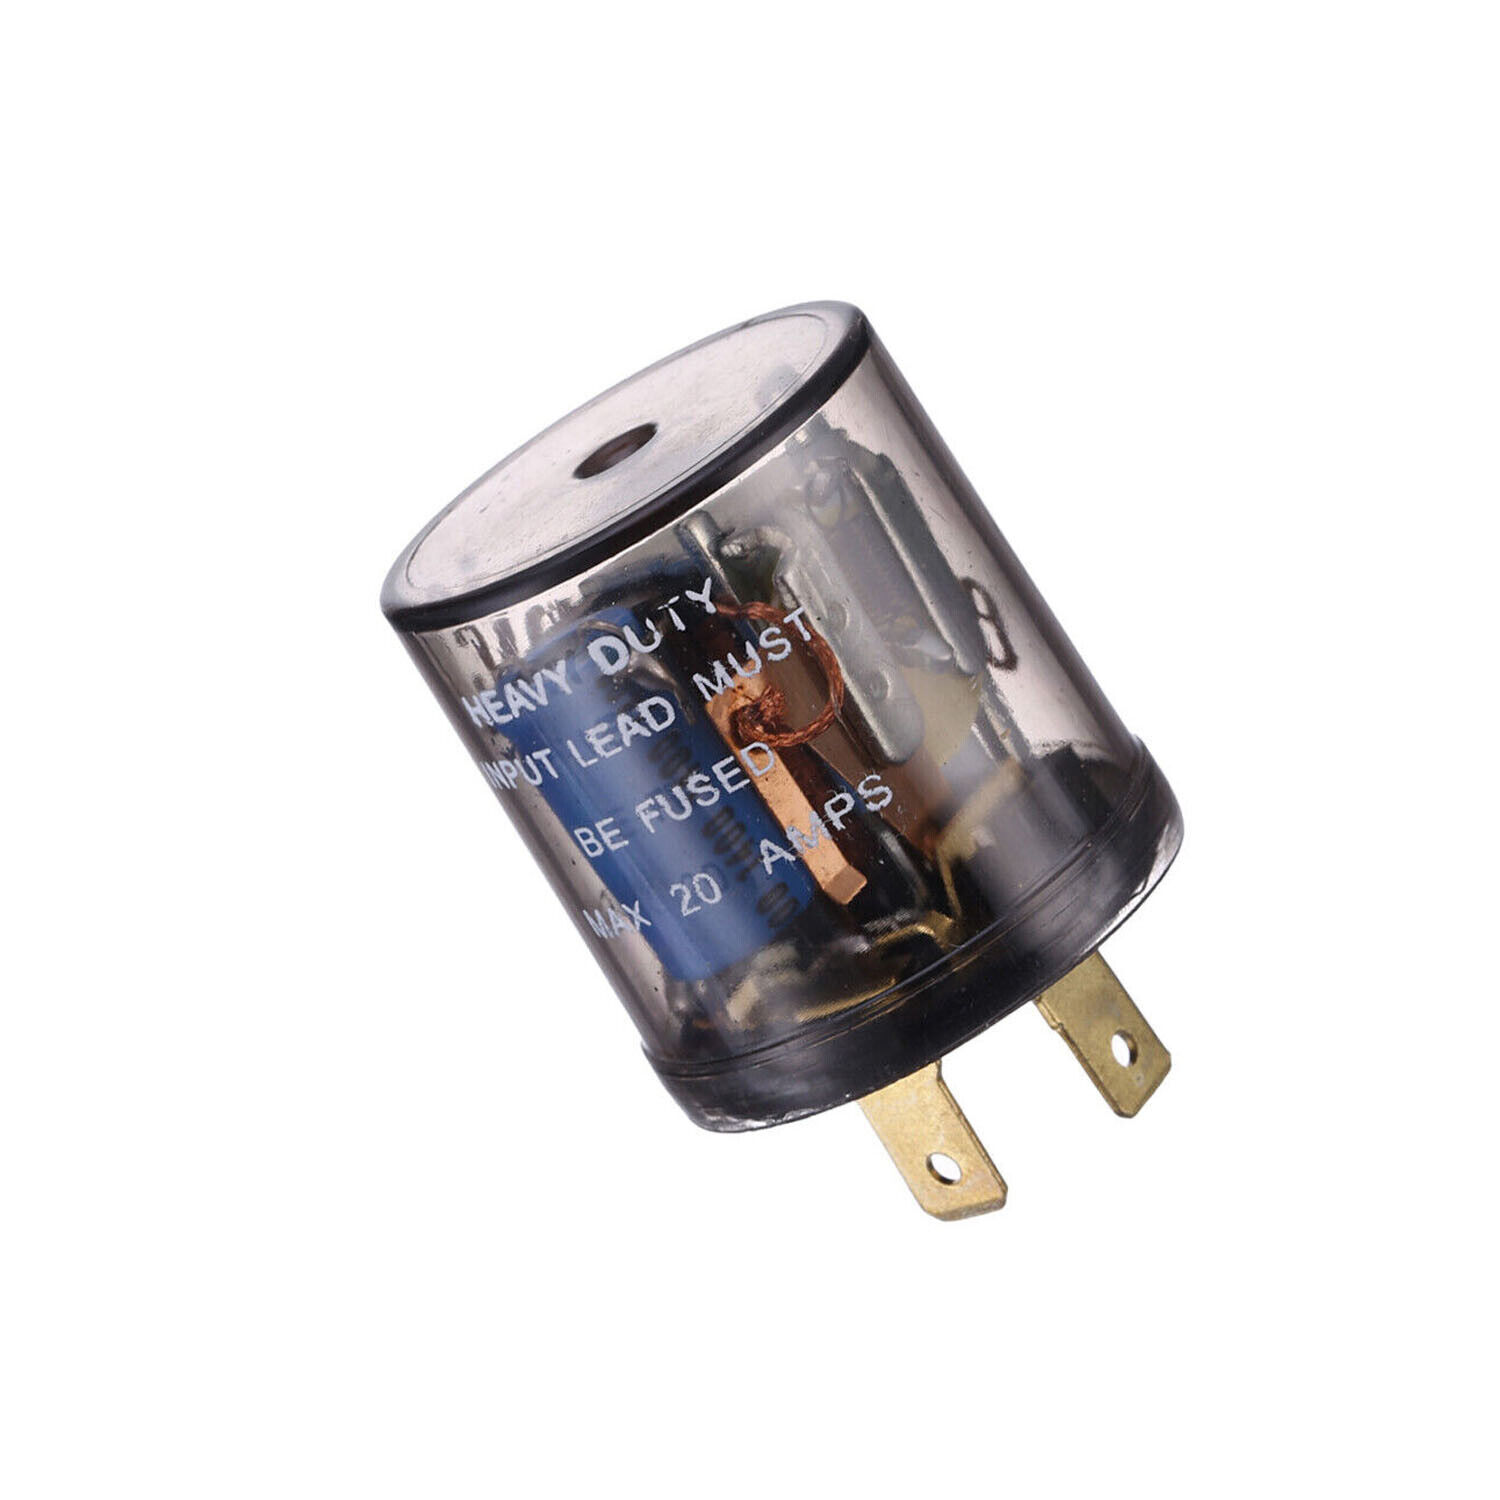 For 2-Pin Variable Car LED Turn Signal Light Blinker Relay EF32 20 Amps 12V